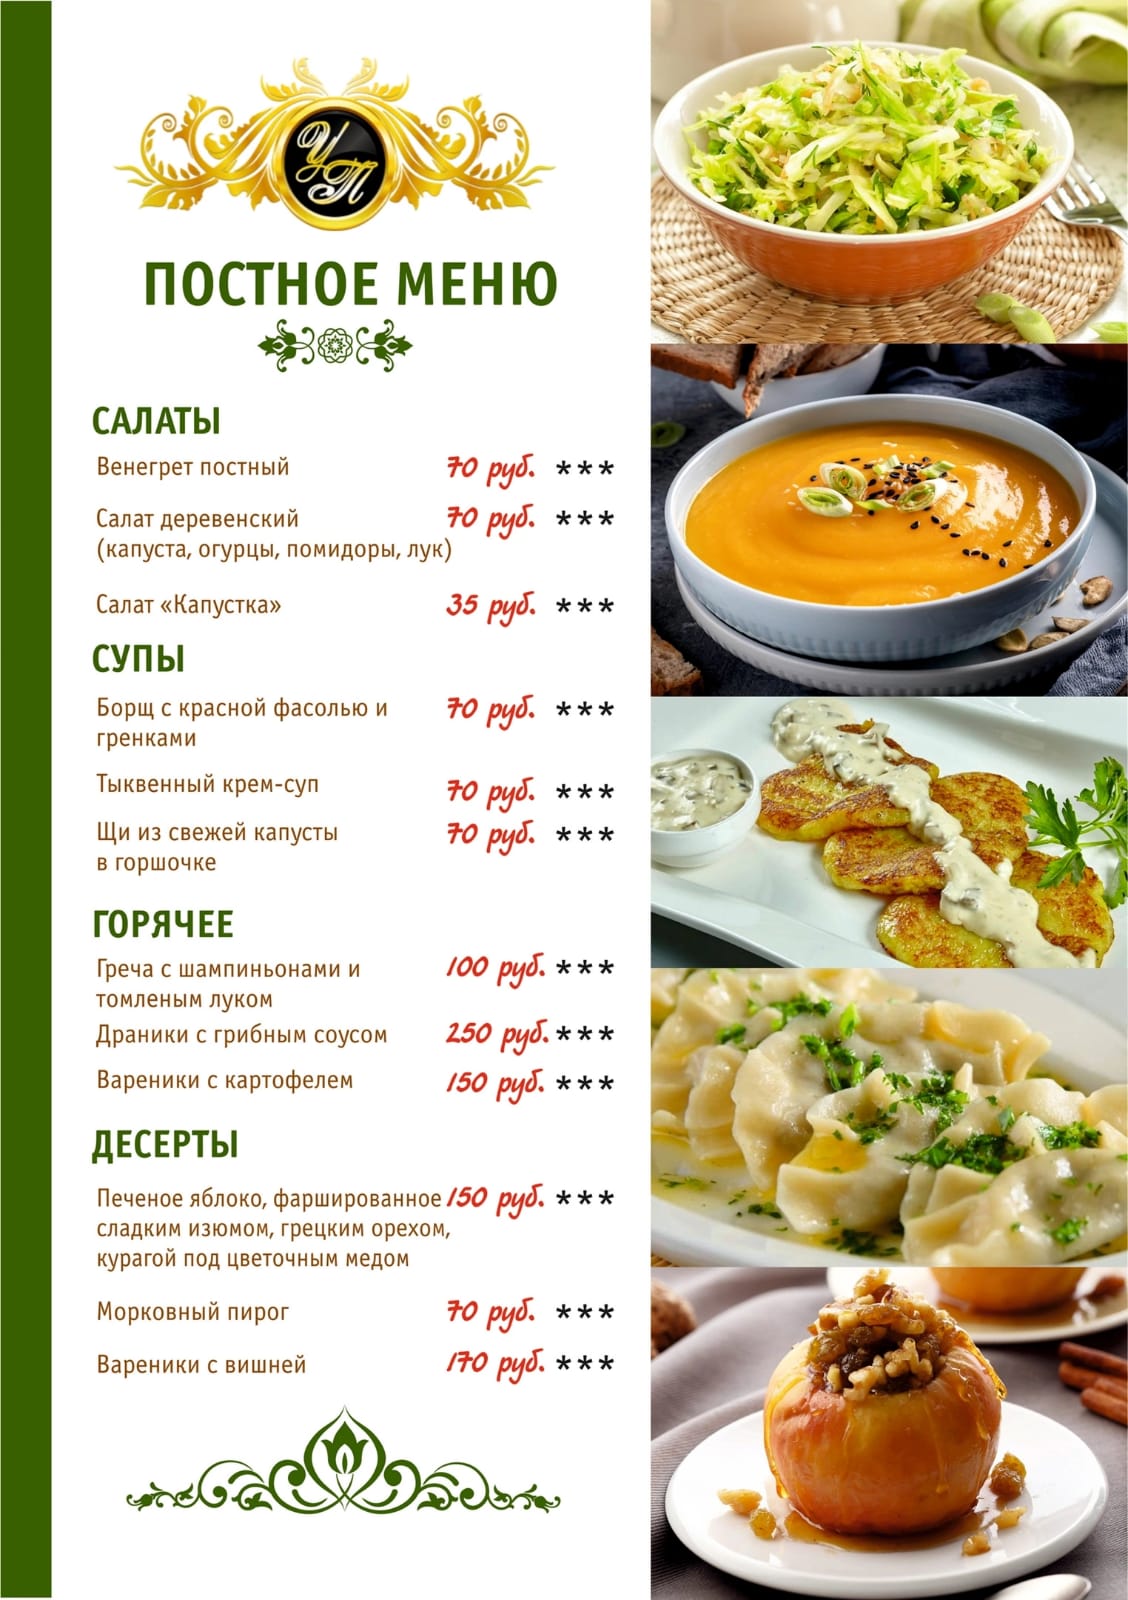 Постные блюда в ресторанах Москвы